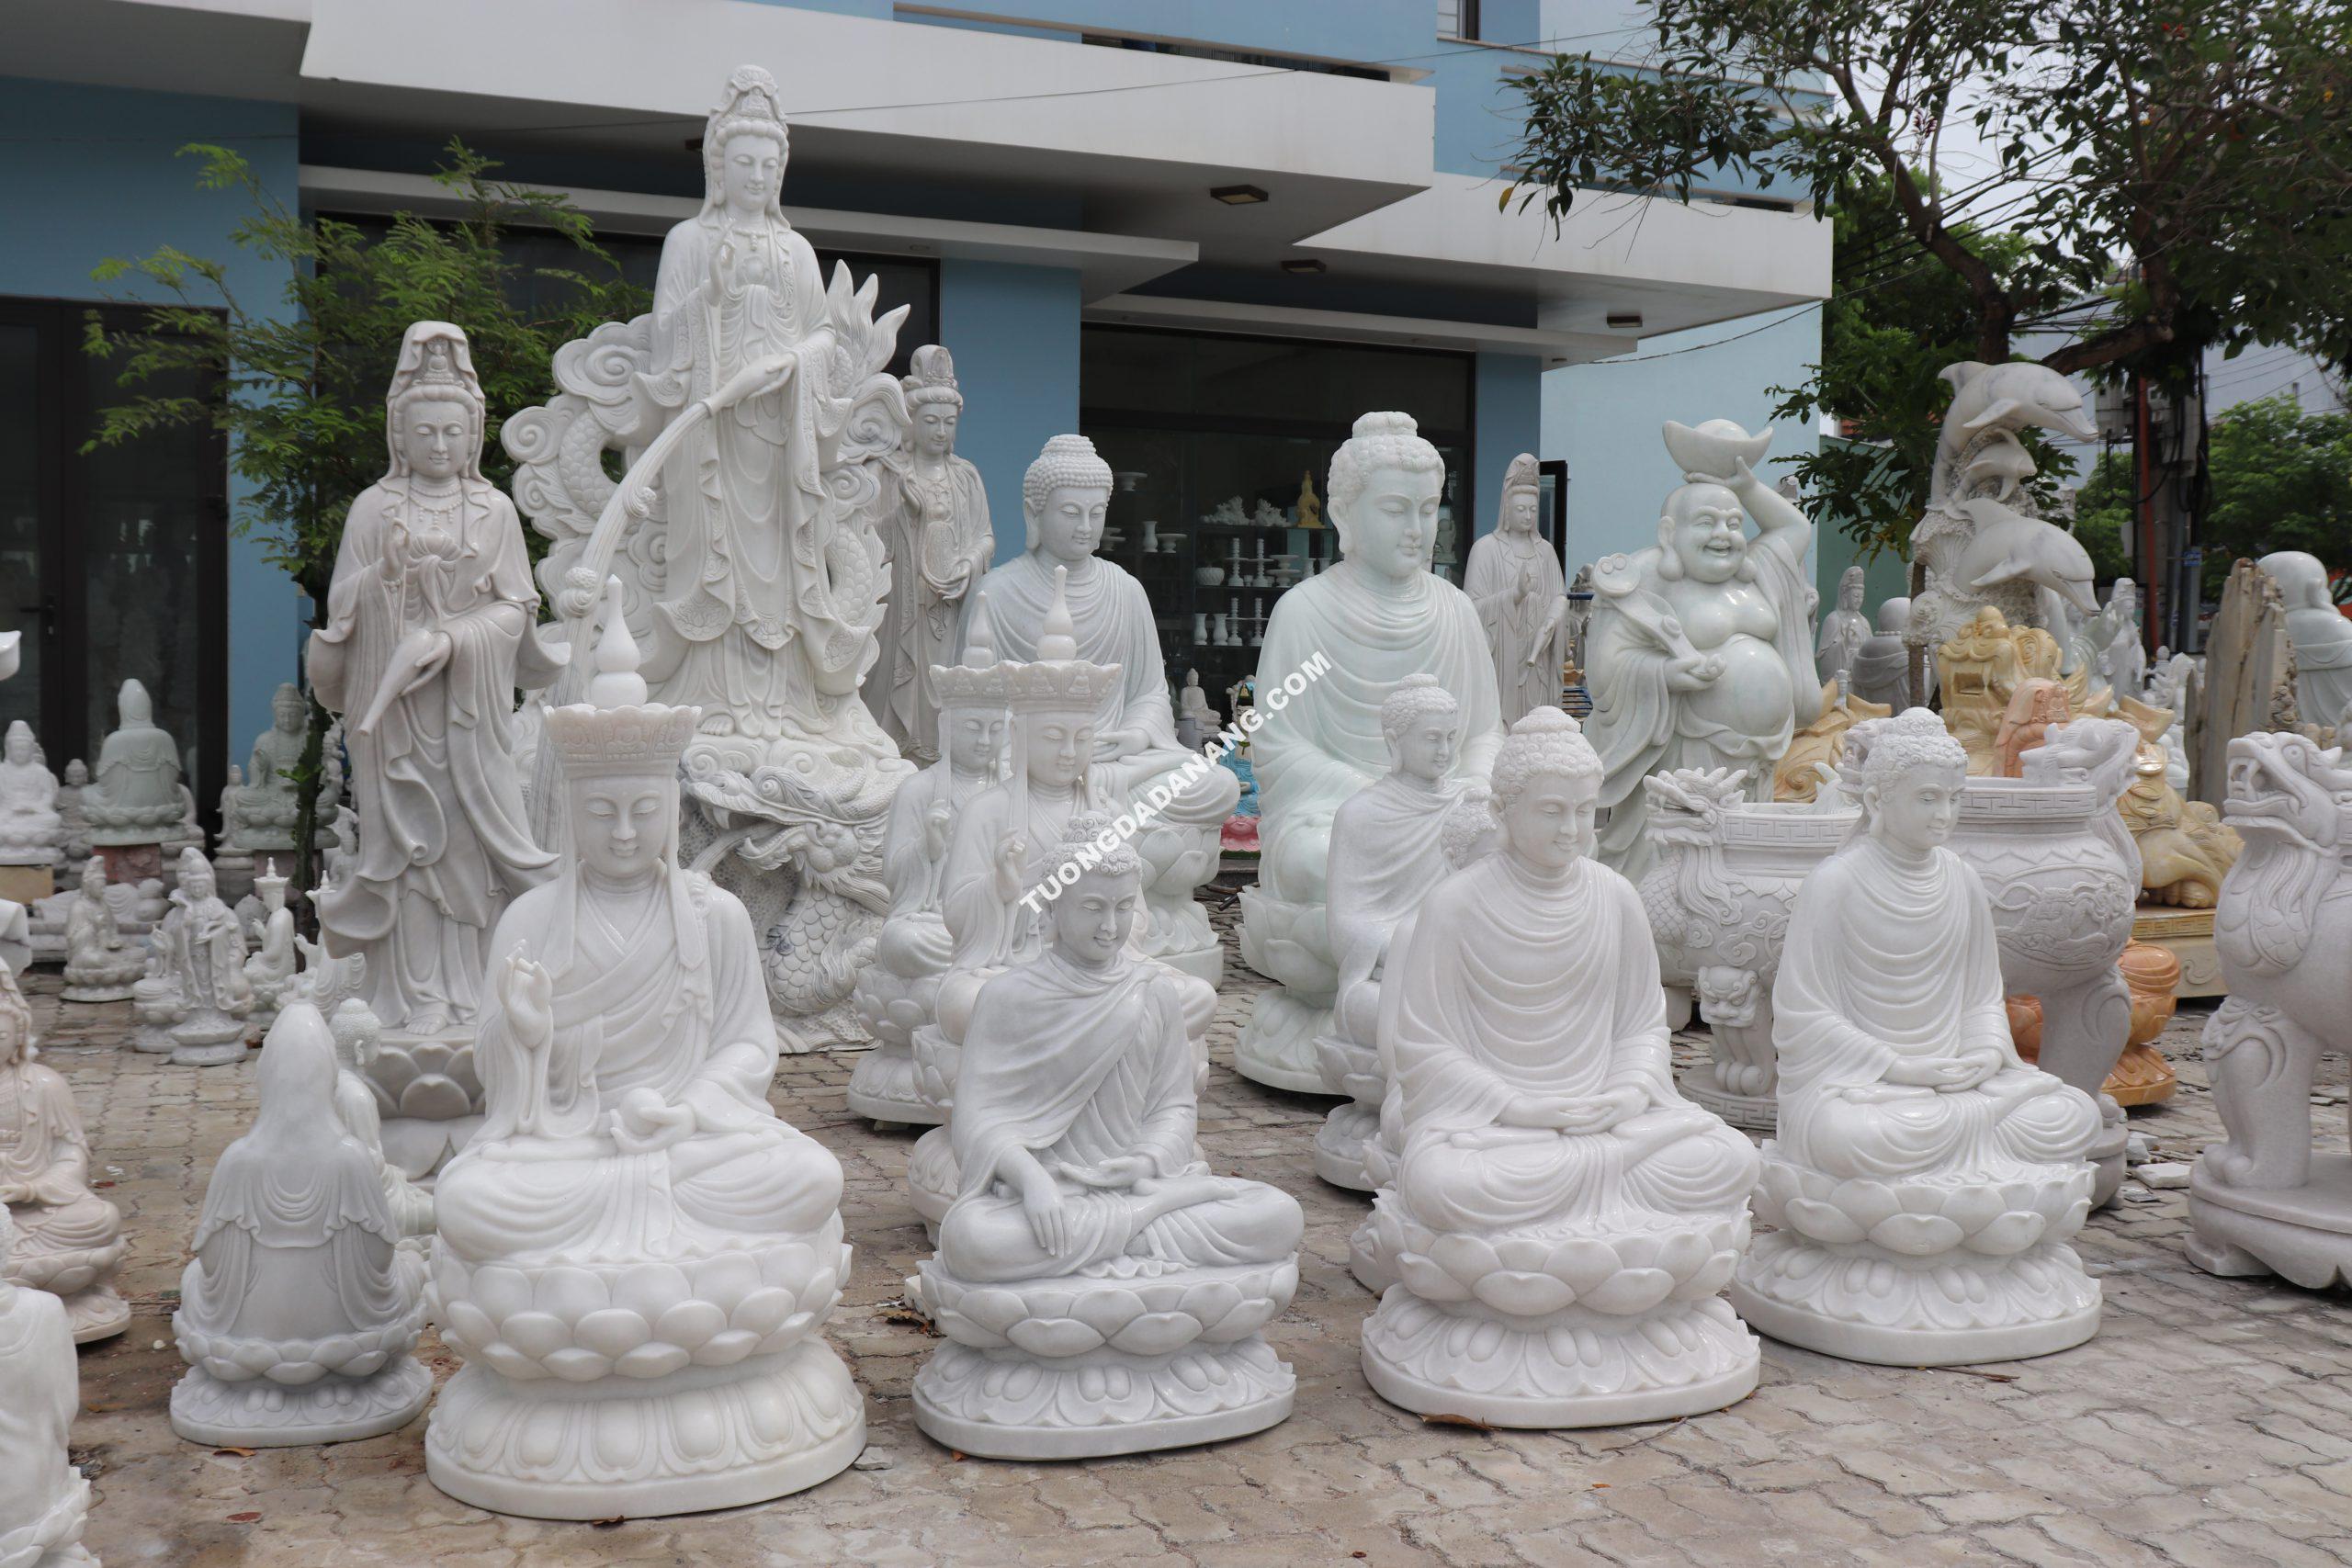 MUA TƯỢNG ĐÁ Ở ĐÂU? - Điêu khắc tượng đá mỹ nghệ non nước Đà Nẵng